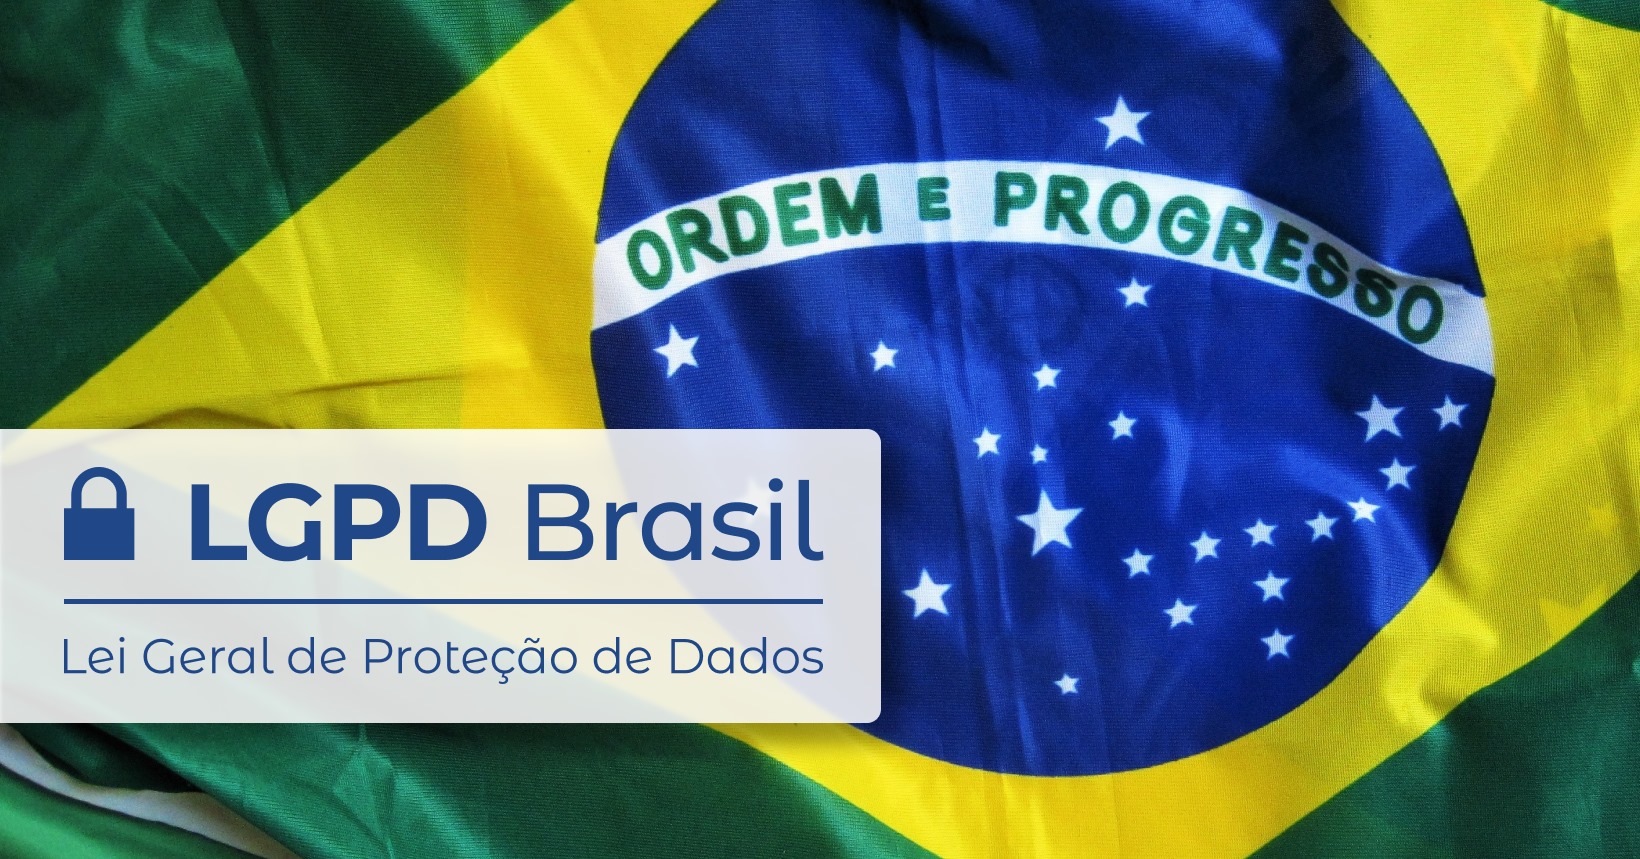 LGPD Brasil - Lei Geral de Proteção de Dados